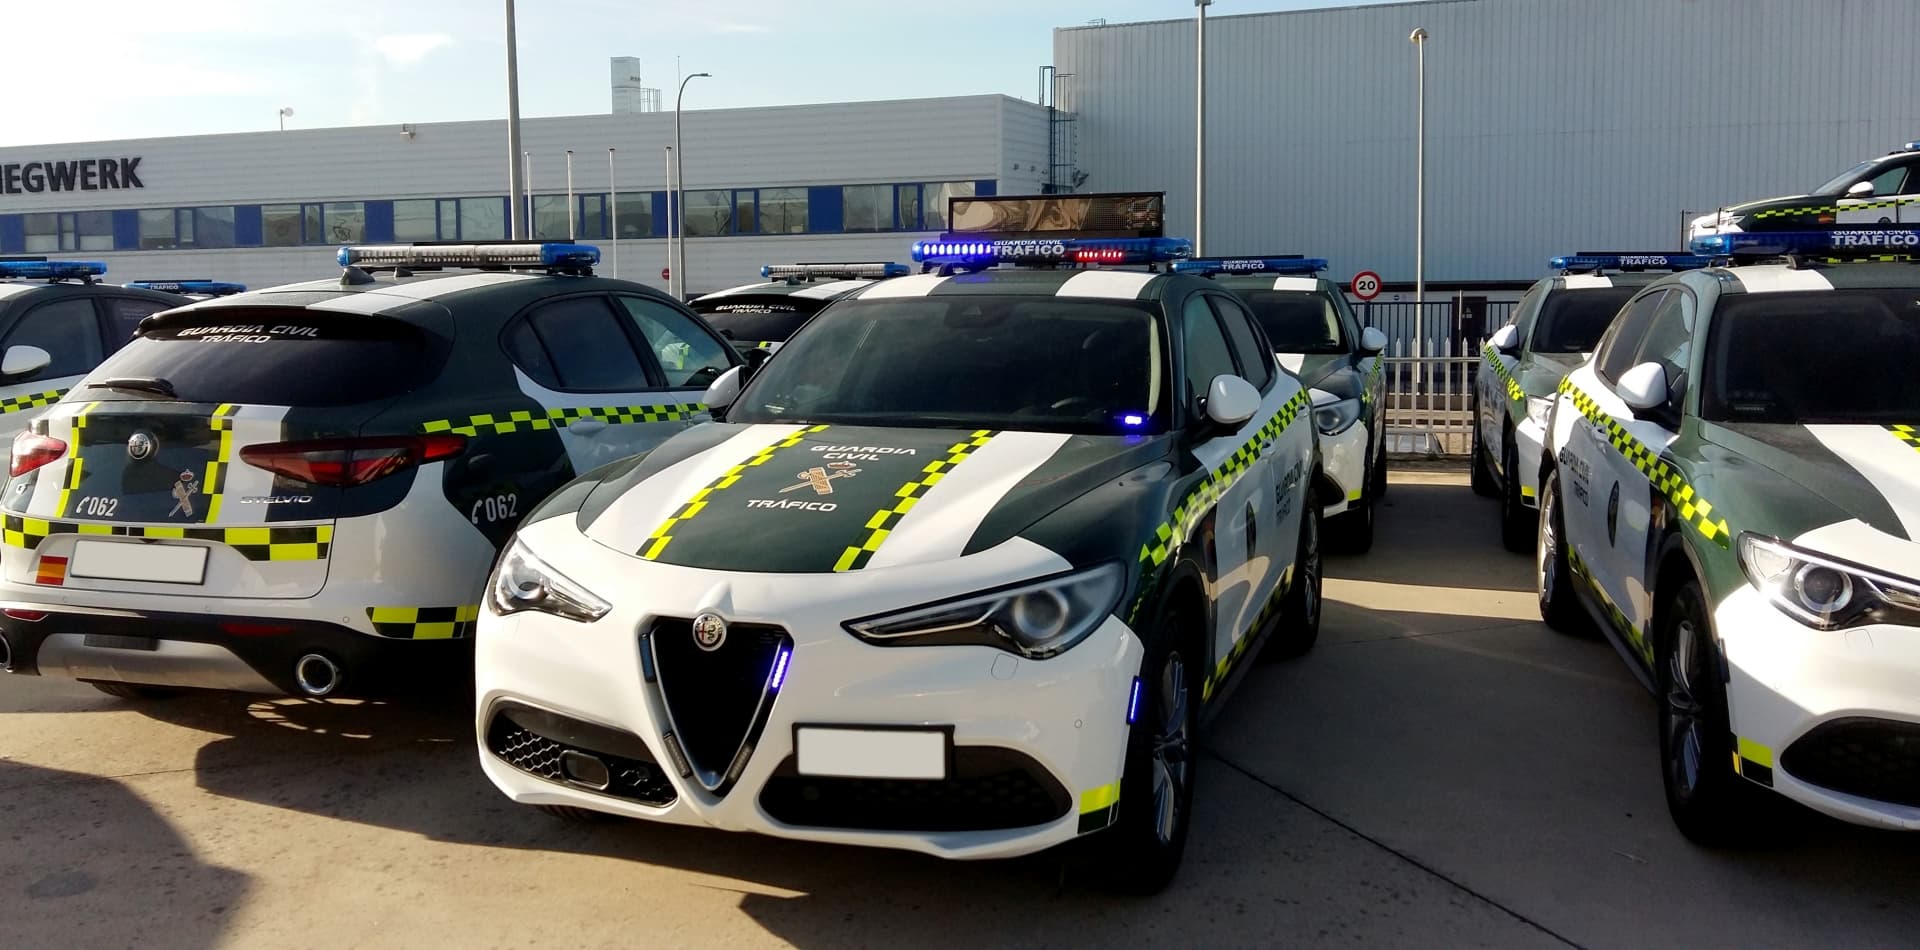 La Guardia Civil estrena coches